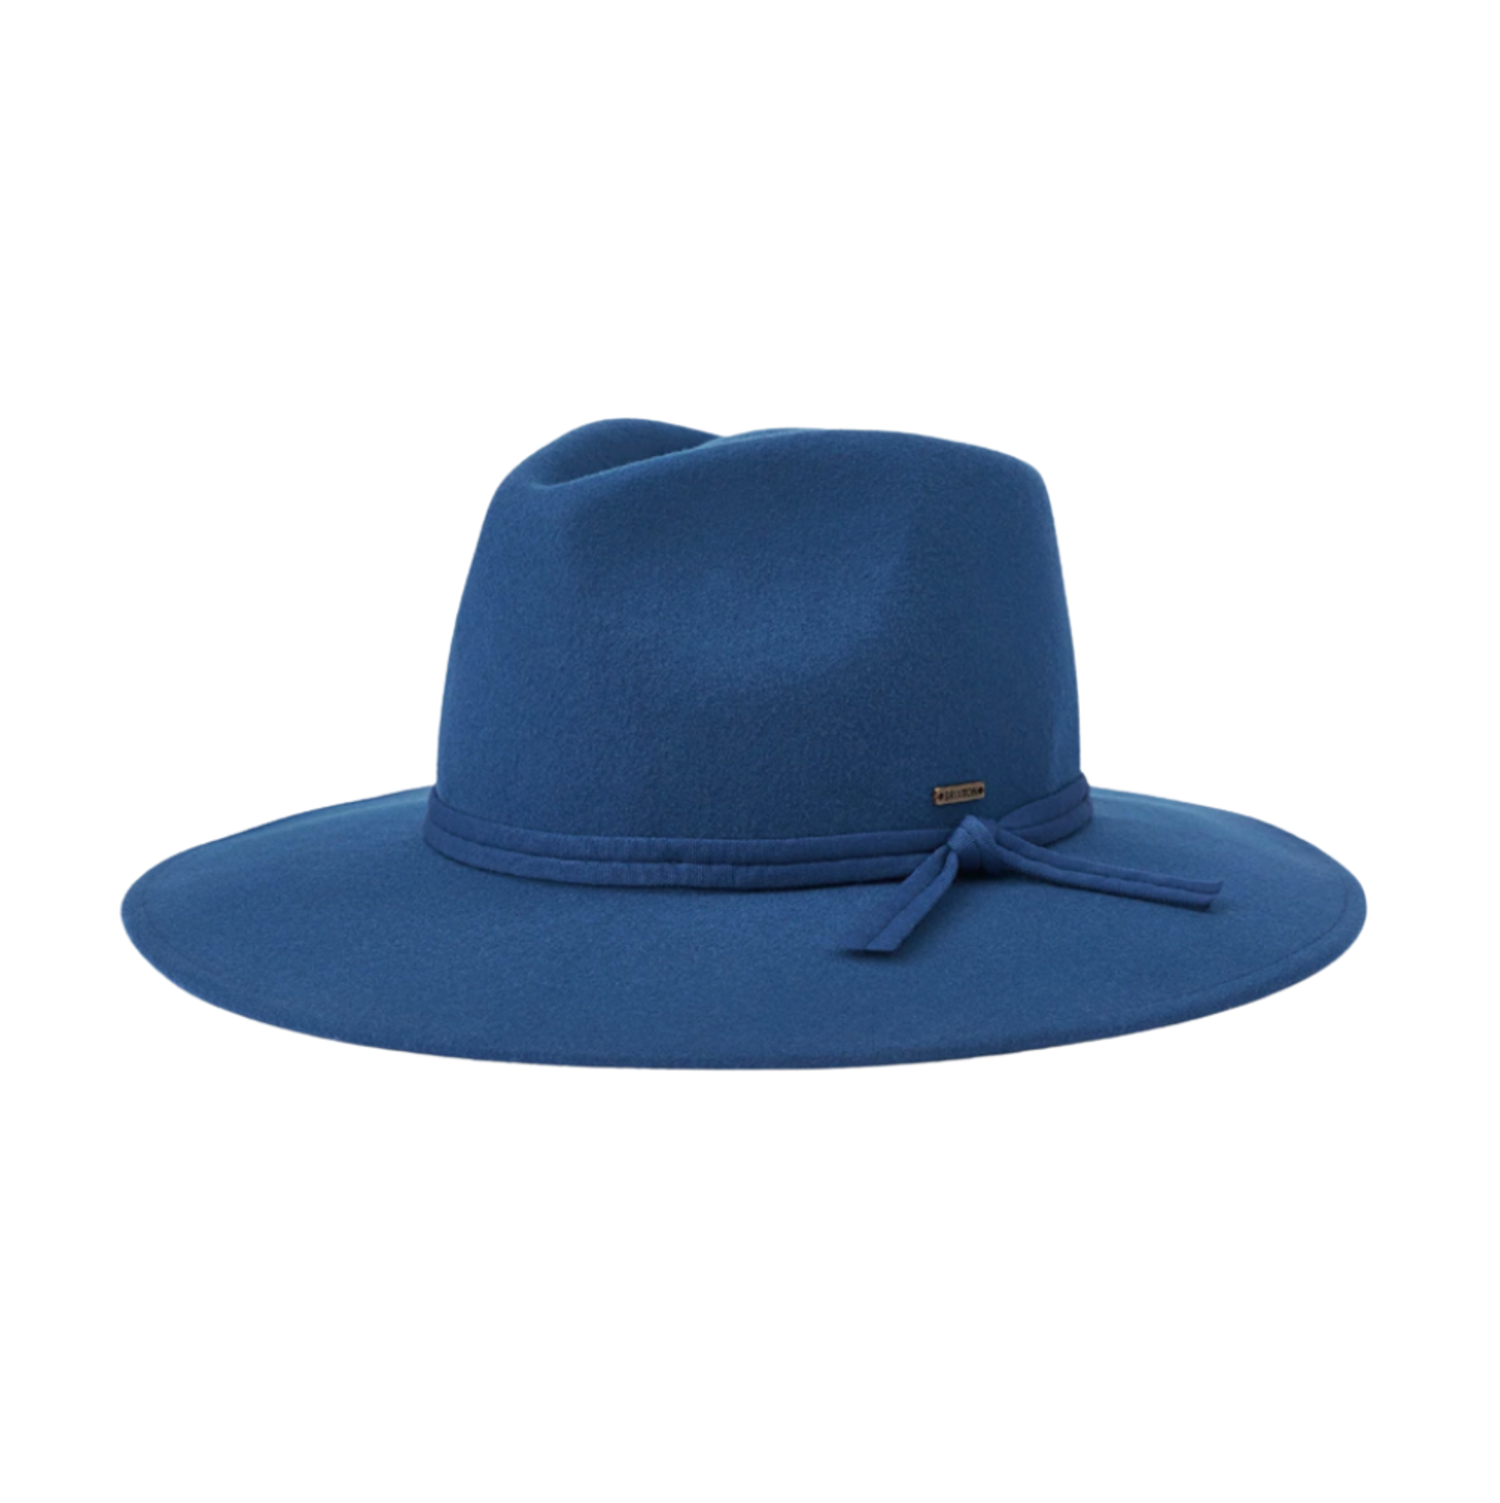 https://cdn.shoplightspeed.com/shops/635526/files/43038915/1500x4000x3/brixton-brixton-joanna-packable-hat.jpg